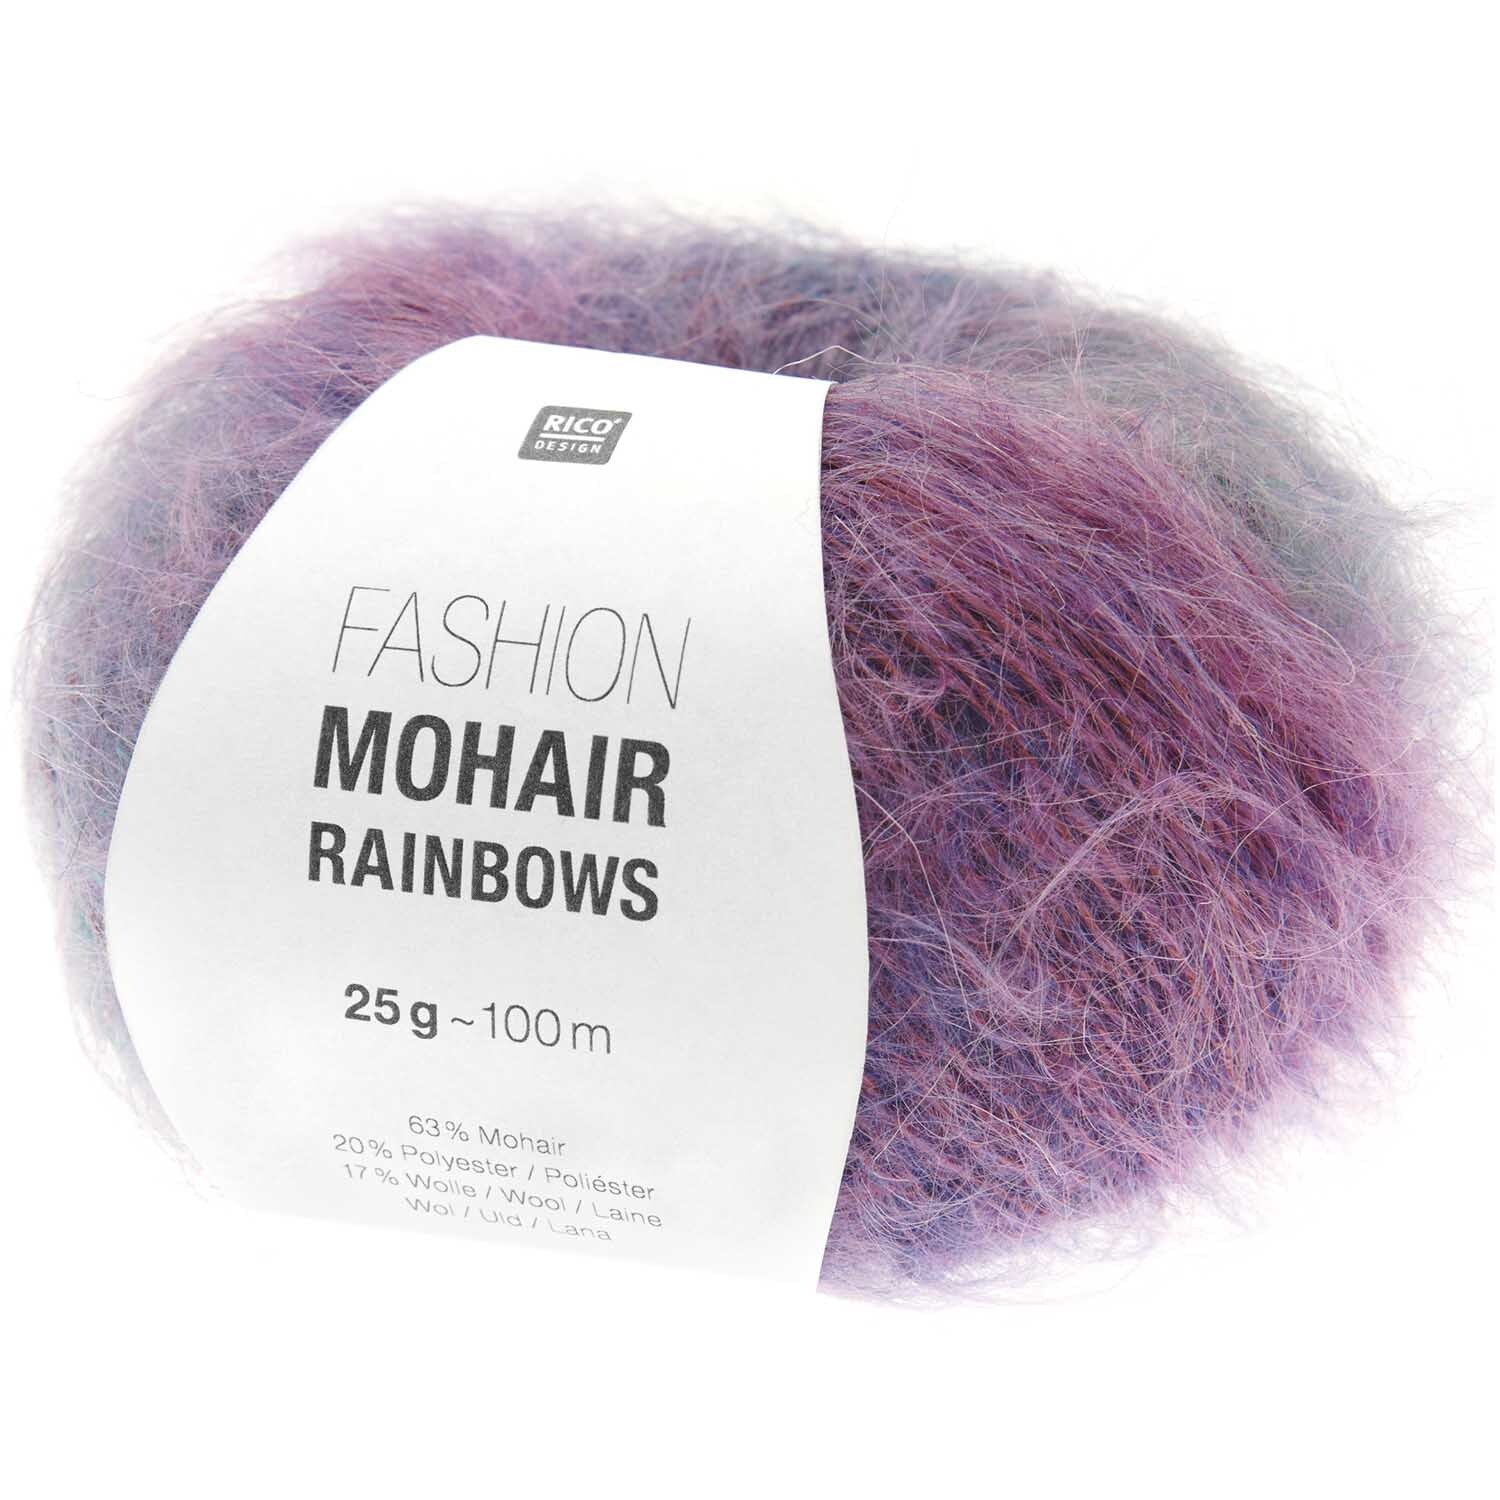 Fashion Mohair Rainbows